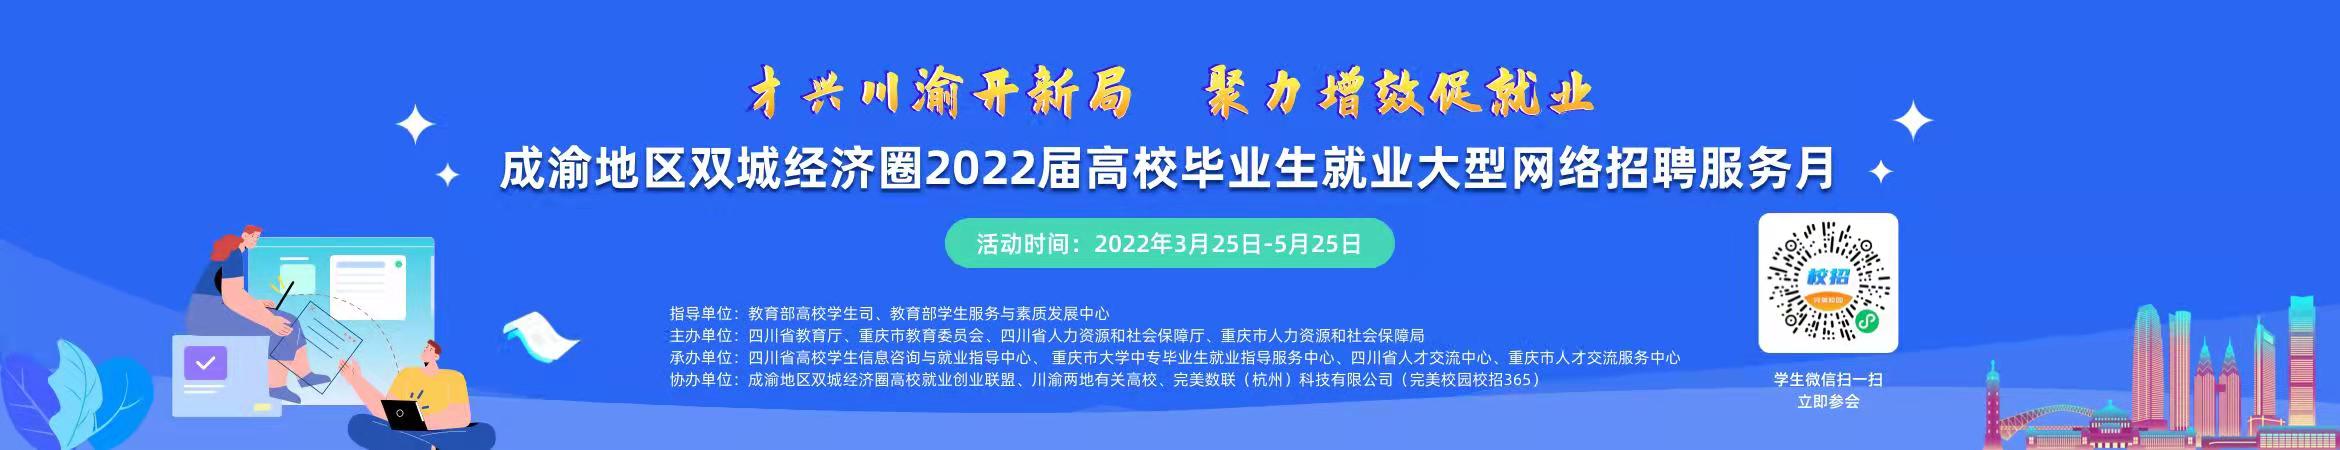 成渝地区双城经济圈2022届普通高校毕业生就业大型网络招聘服务月